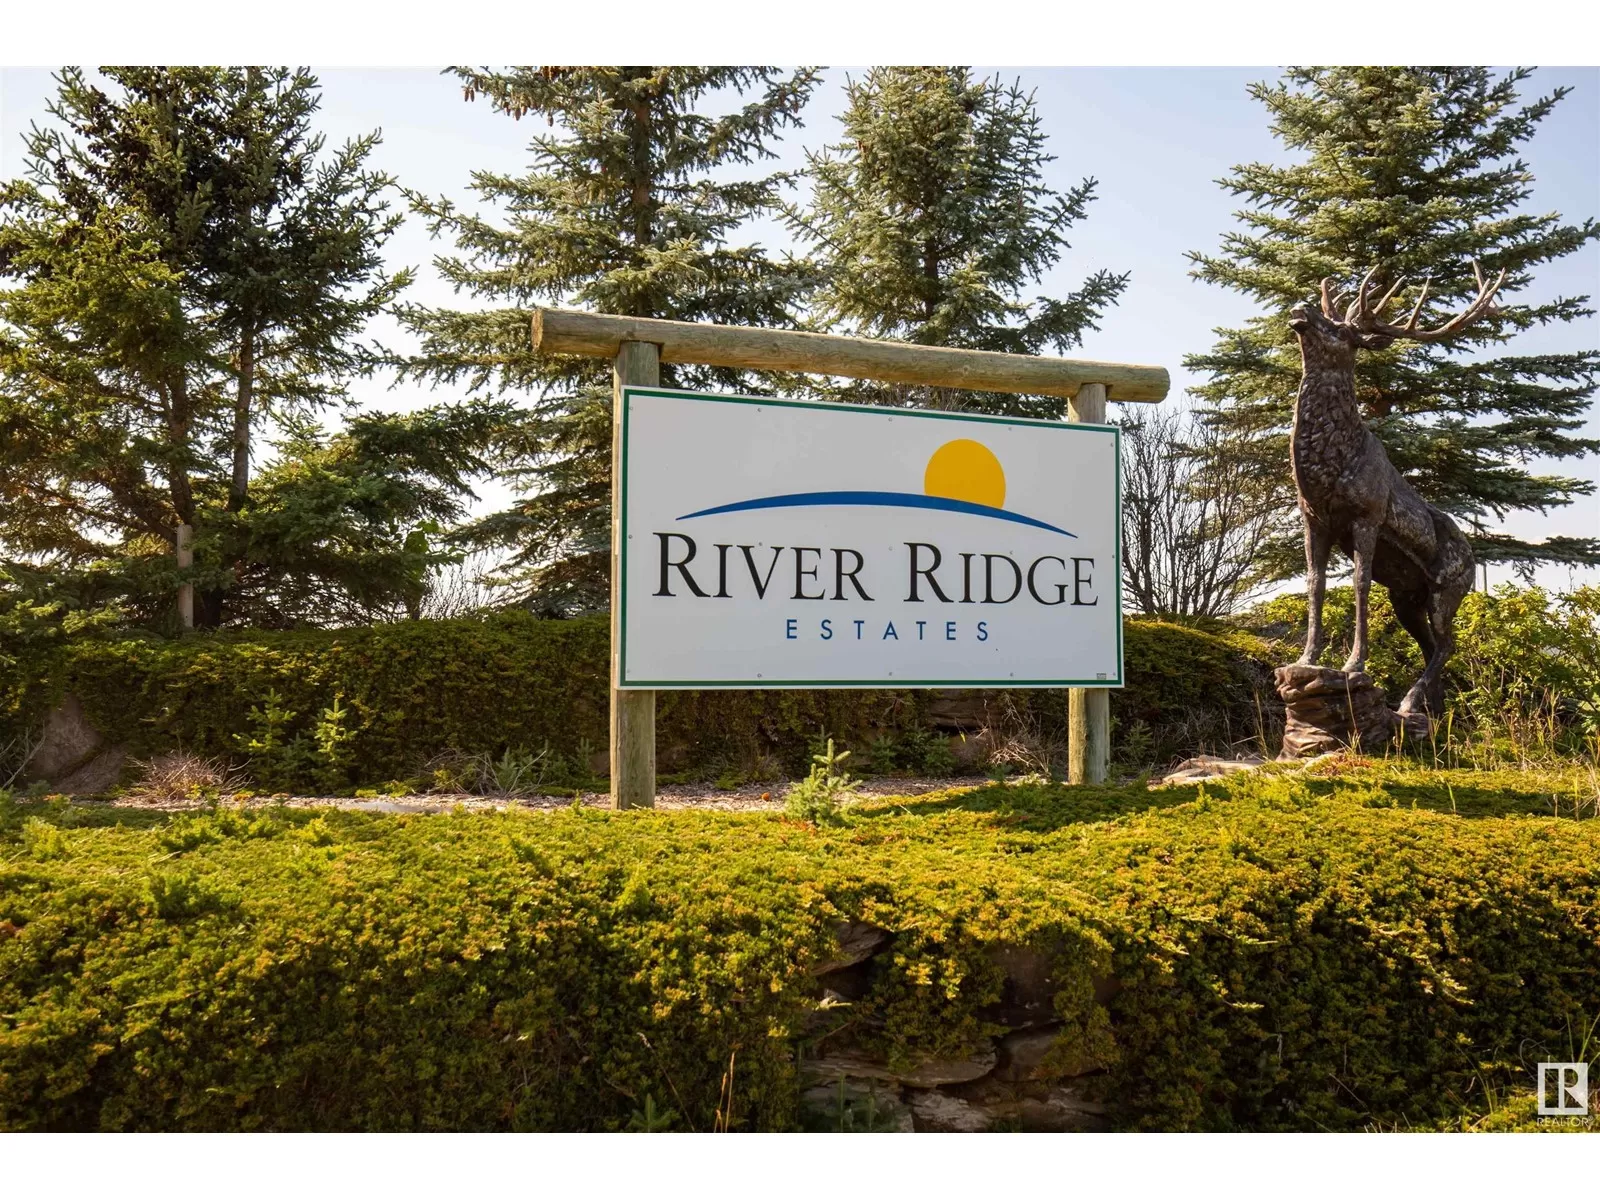 No Building for rent: 6 River Ridge Es, Rural Wetaskiwin County, Alberta T0C 2V0